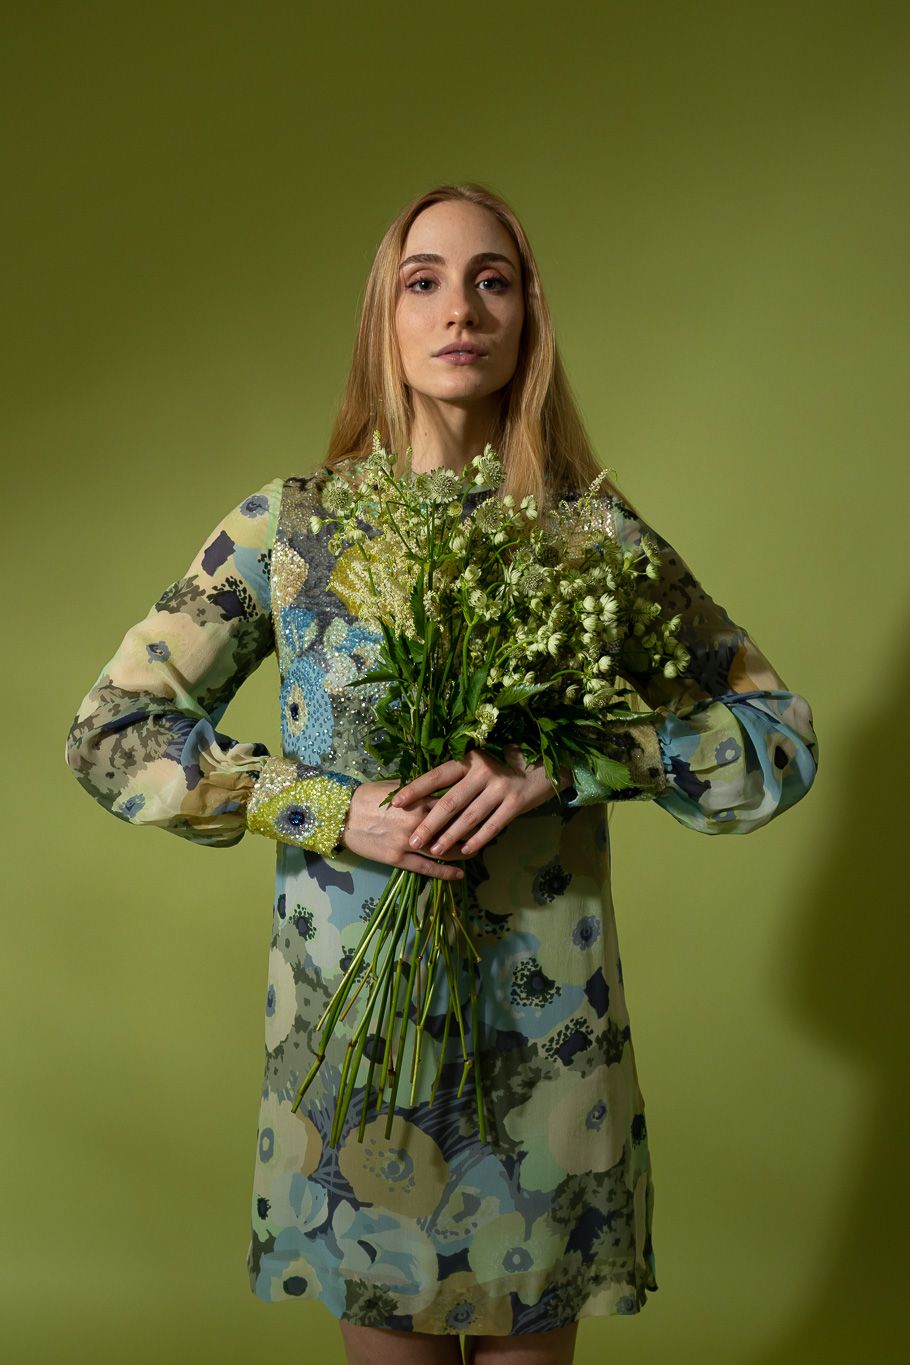 Vintage Ken Scott dress on model on green background with bouquet of flowers @recessla